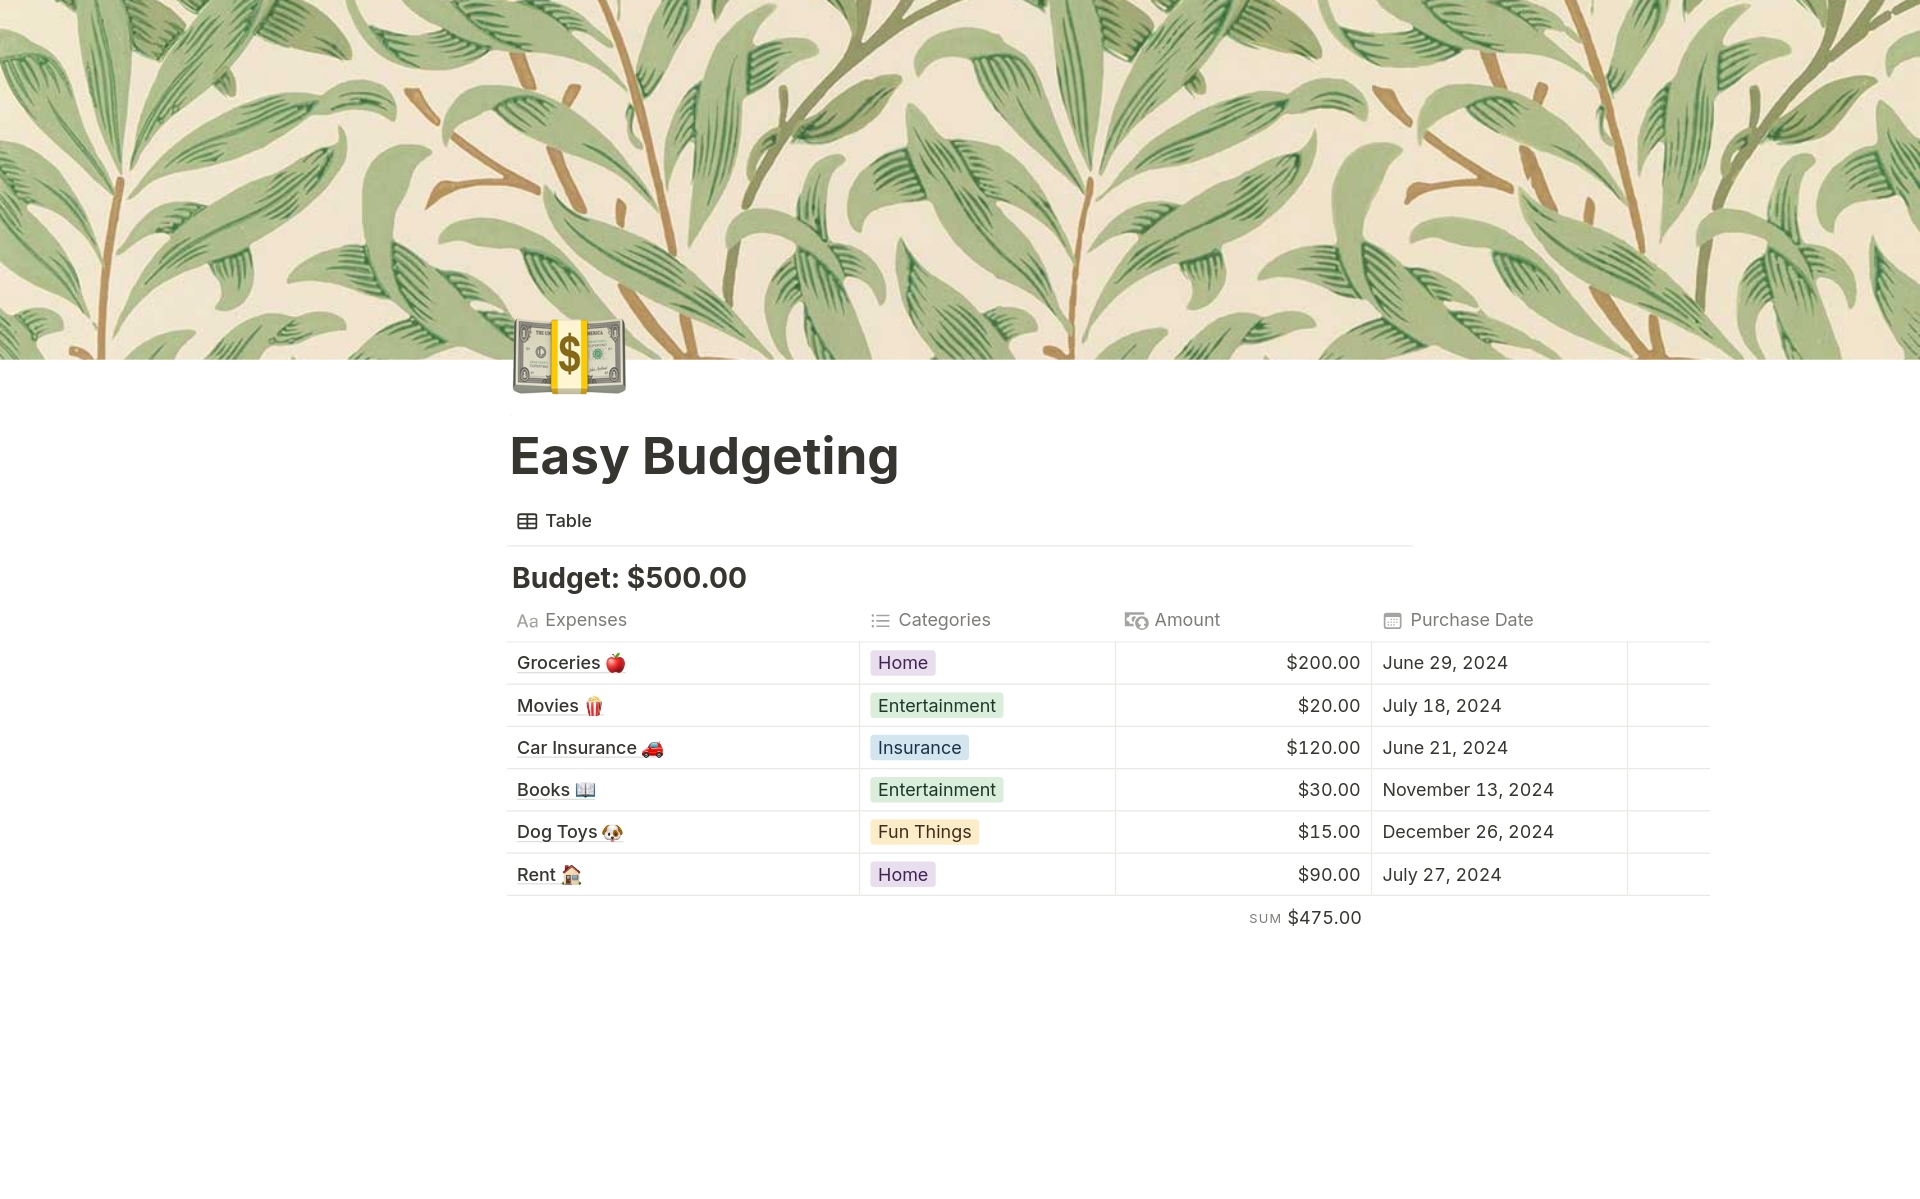 Vista previa de plantilla para Budgeting Chart